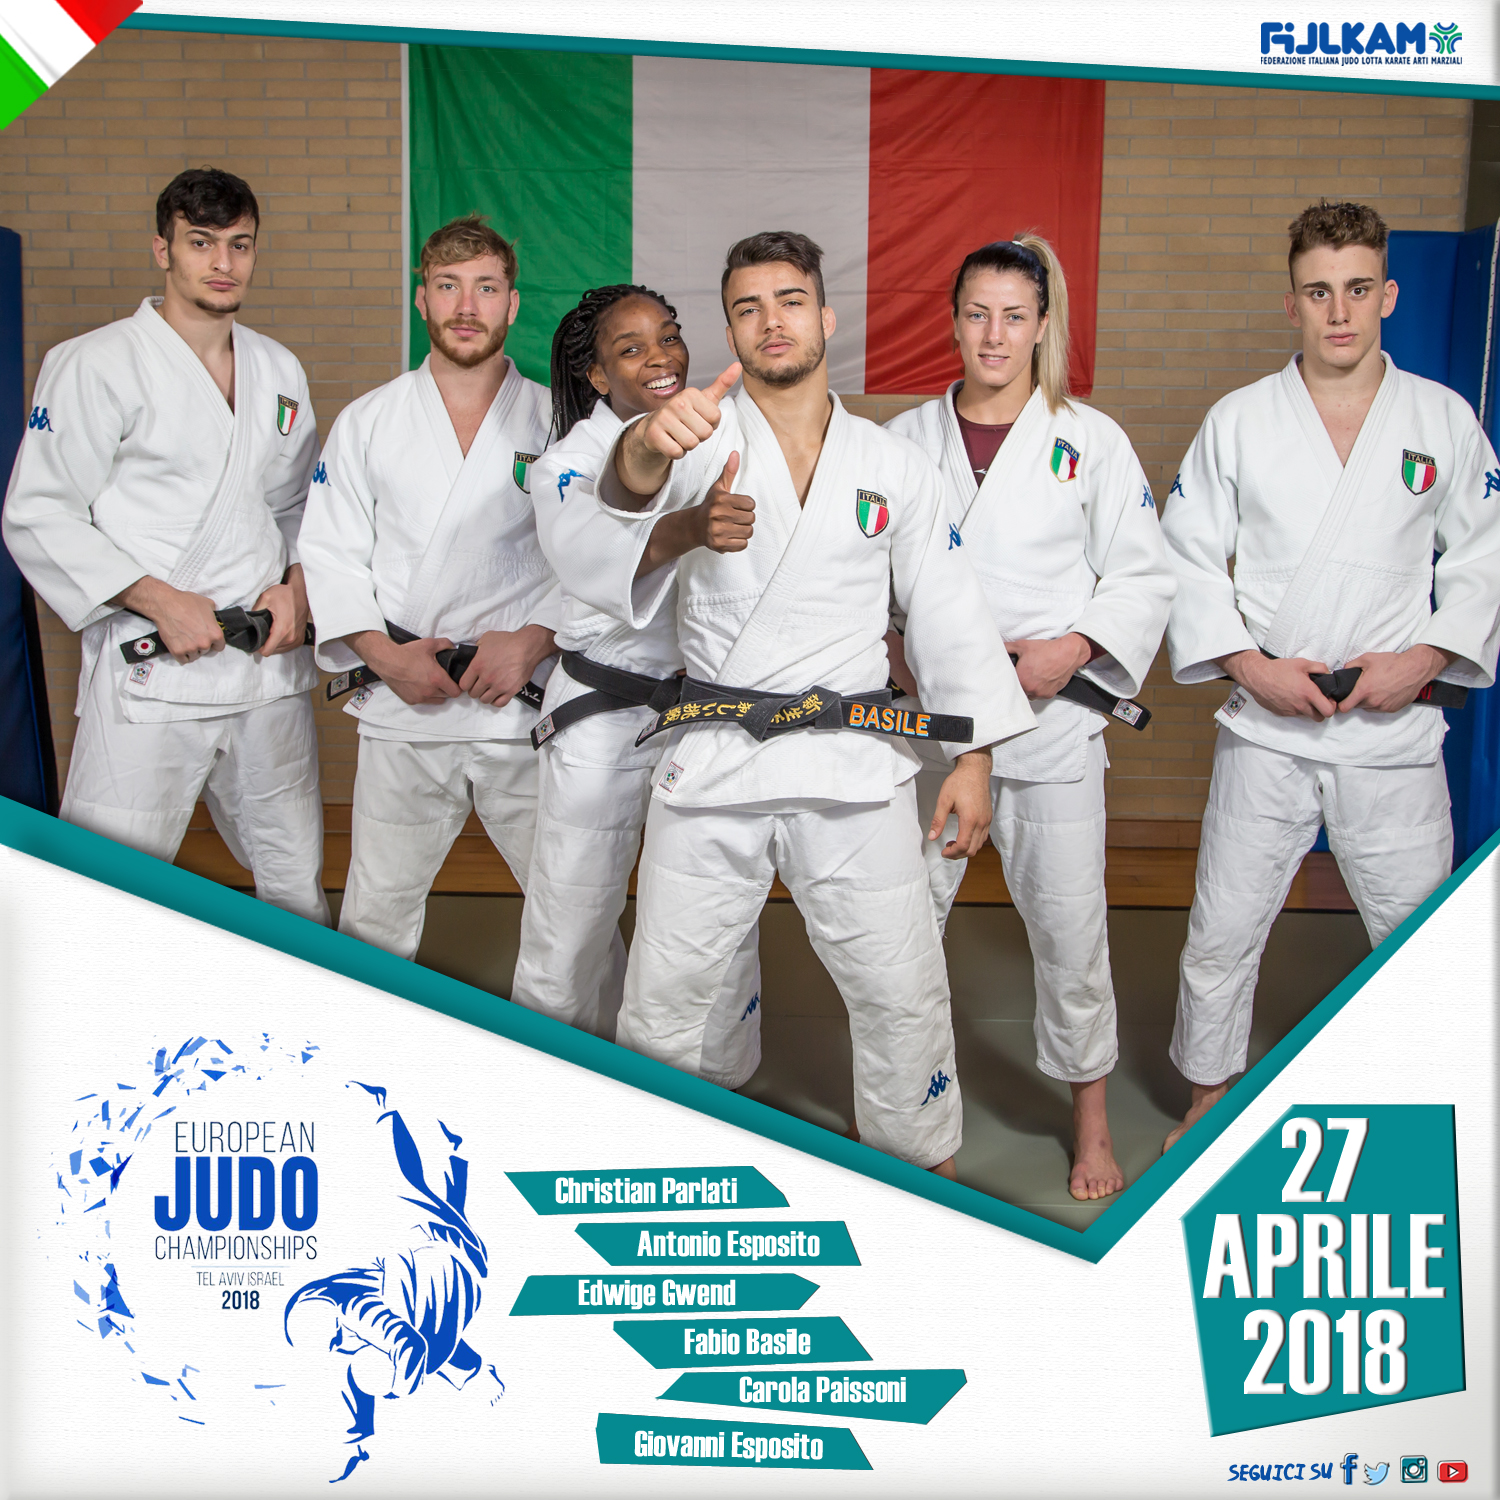 Campionati Europei di Judo a Tel Aviv: arriva la 2ª medaglia per l'Italia, Antonio Esposito conquista il bronzo